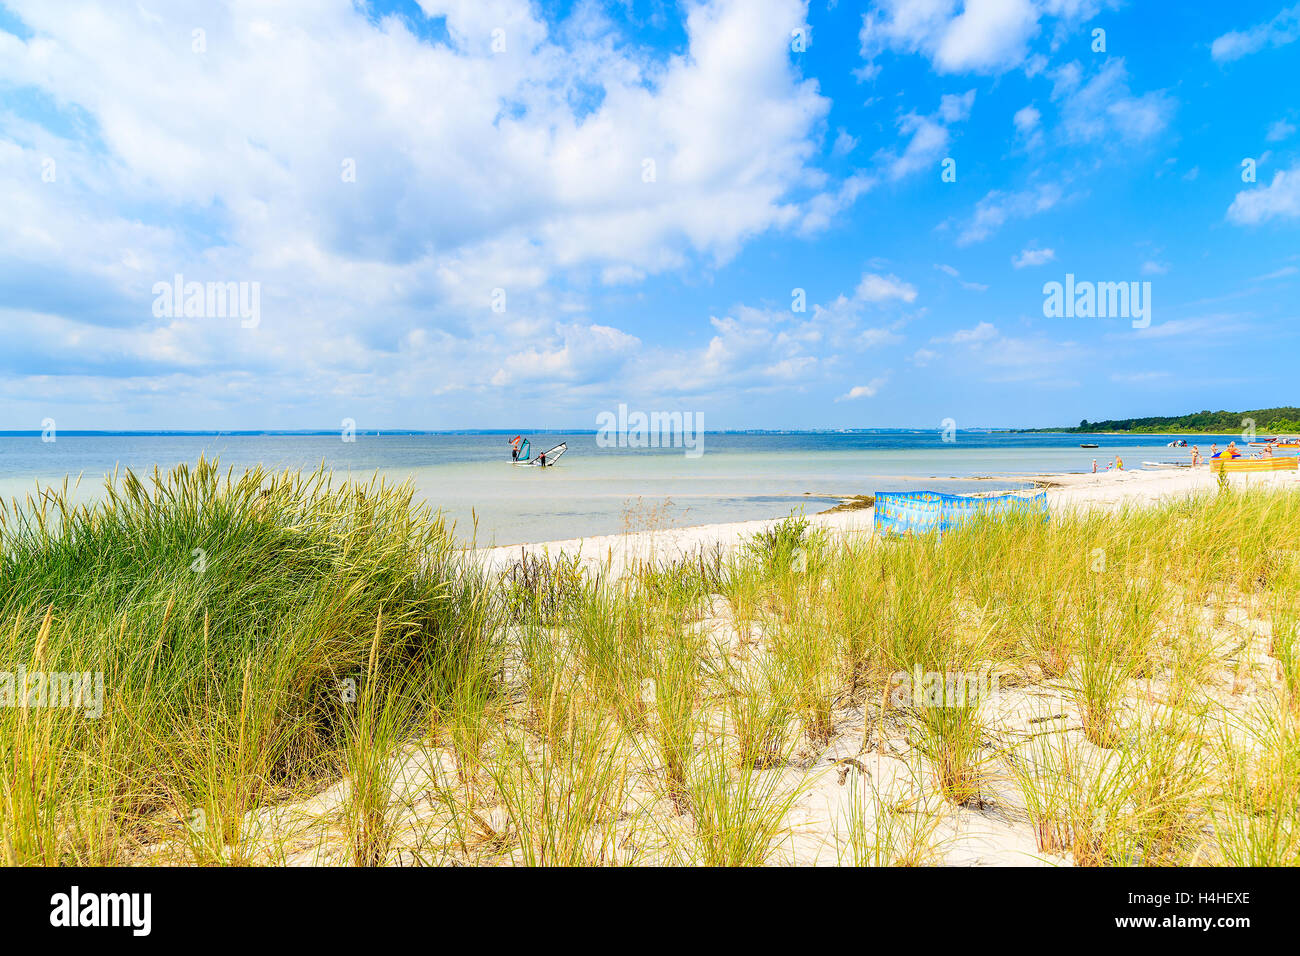 Una vista della spiaggia con dune di sabbia in Kuznica villaggio sulla Penisola di Hel, Mar Baltico, Polonia Foto Stock